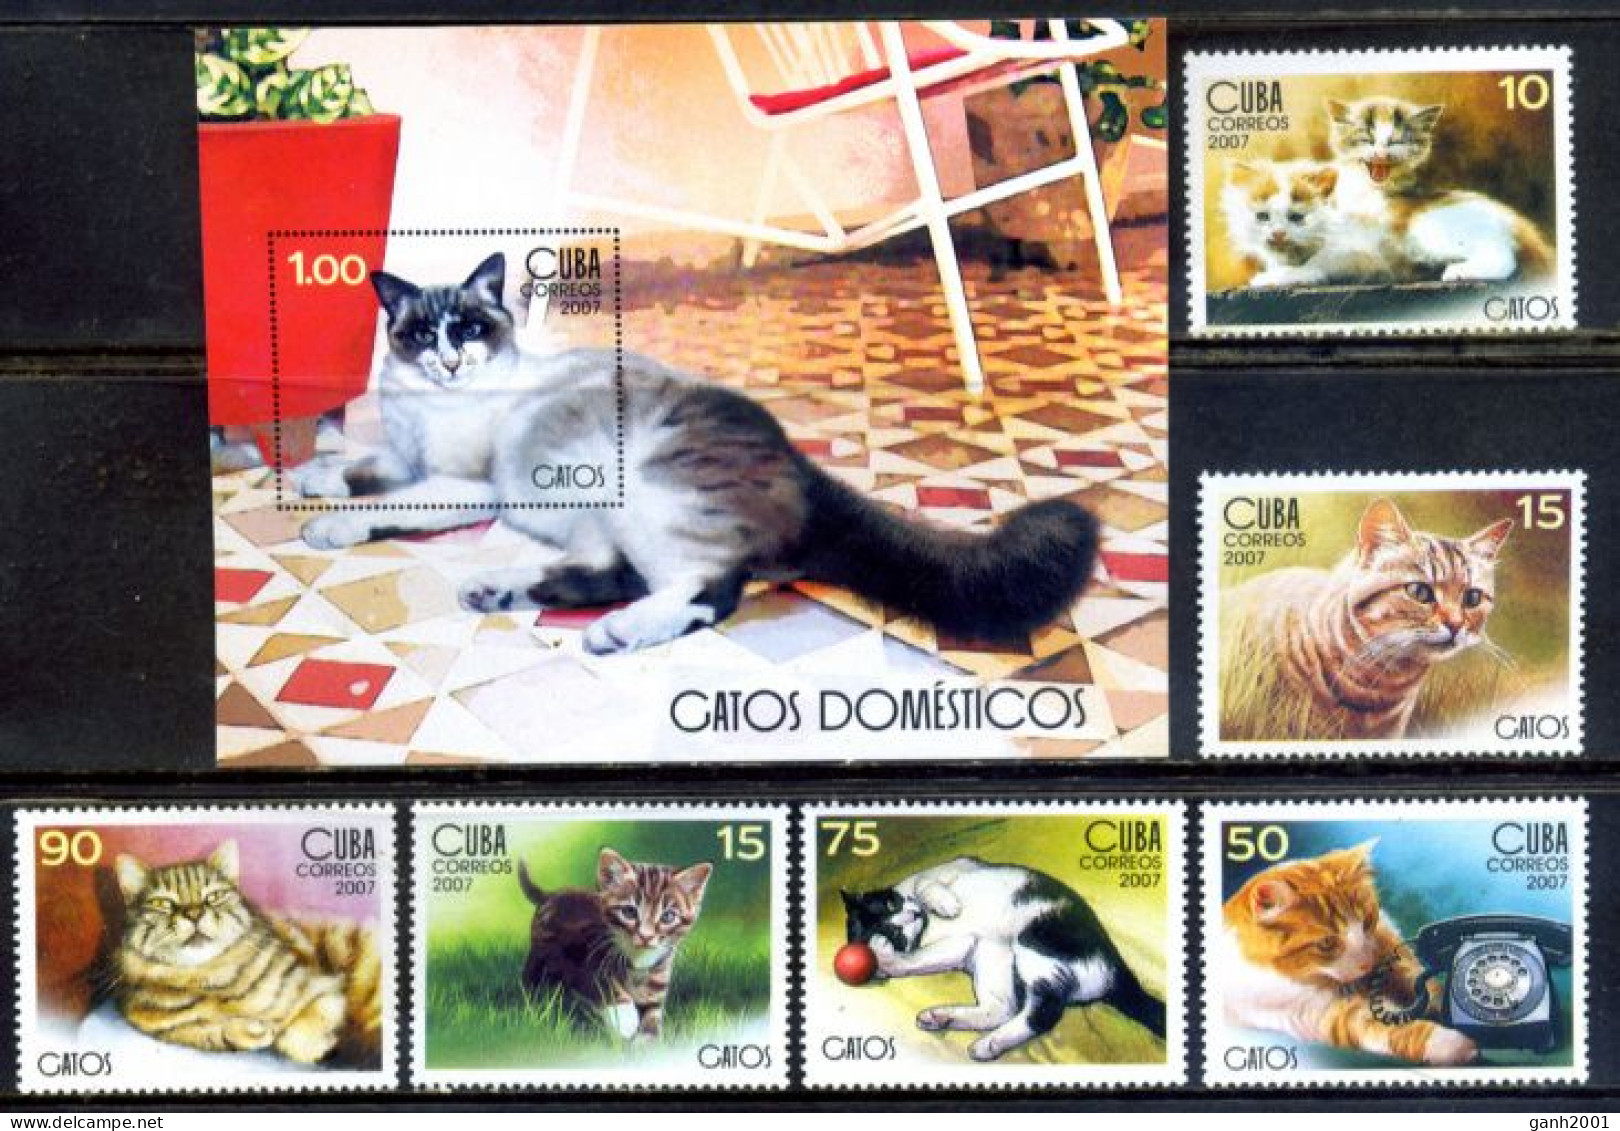 Cuba 2007 / Cats MNH Gatos Katzen Chats / Hh35  33-61 - Chats Domestiques